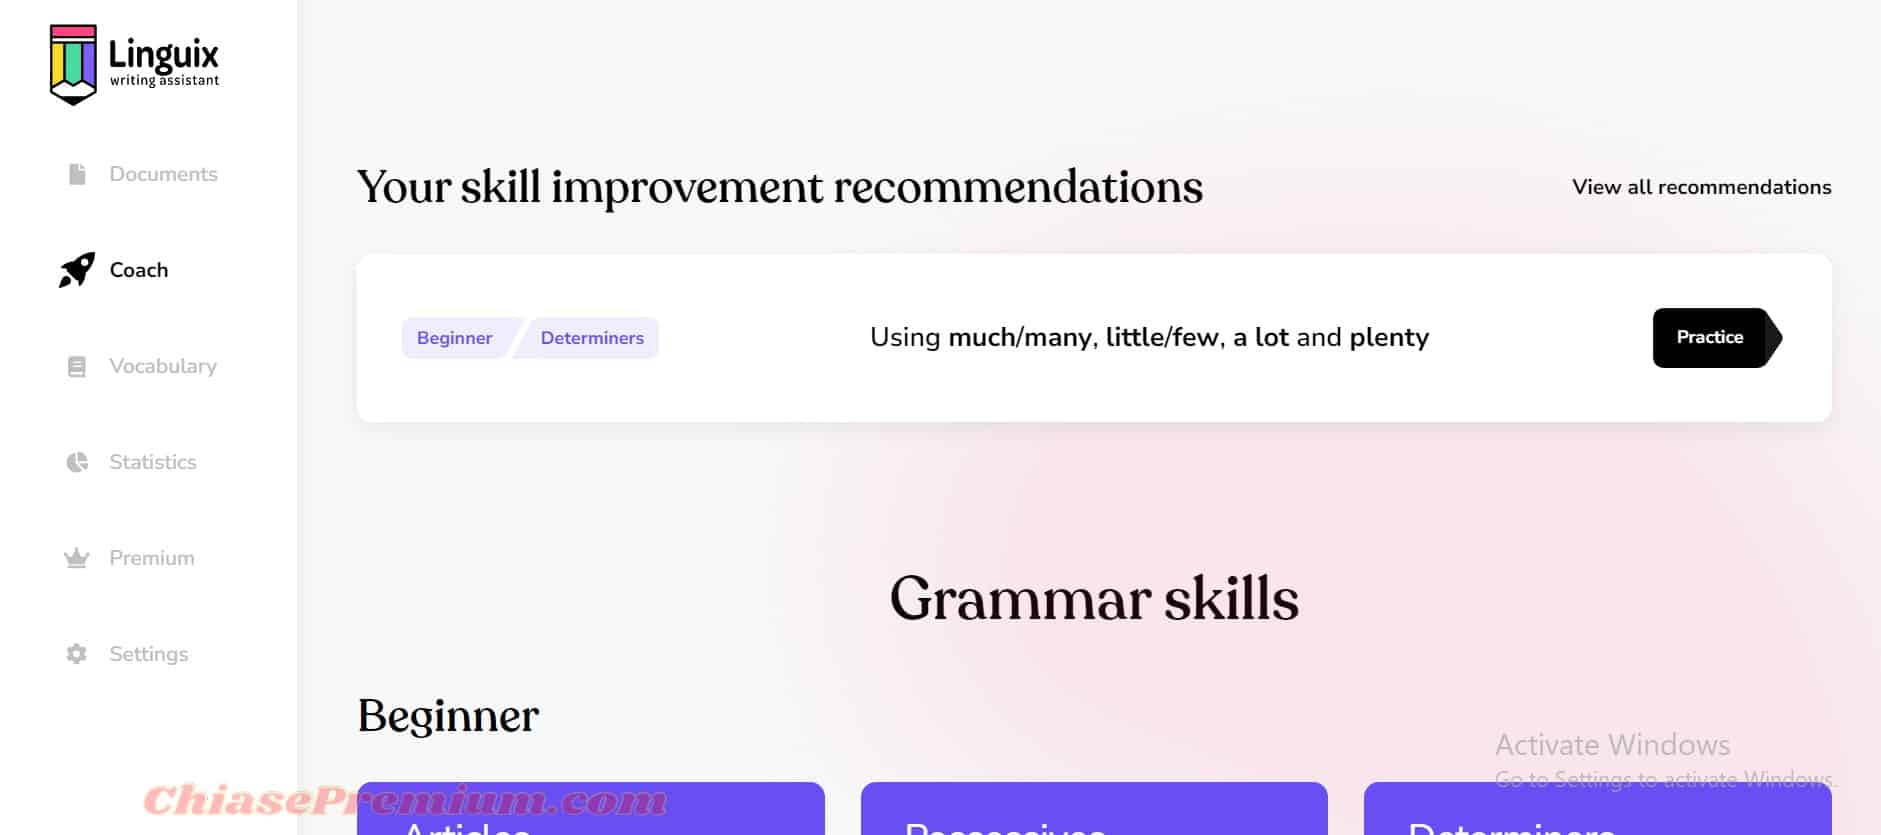 Linguix: Your skill improvement recommendations và Grammar skills.